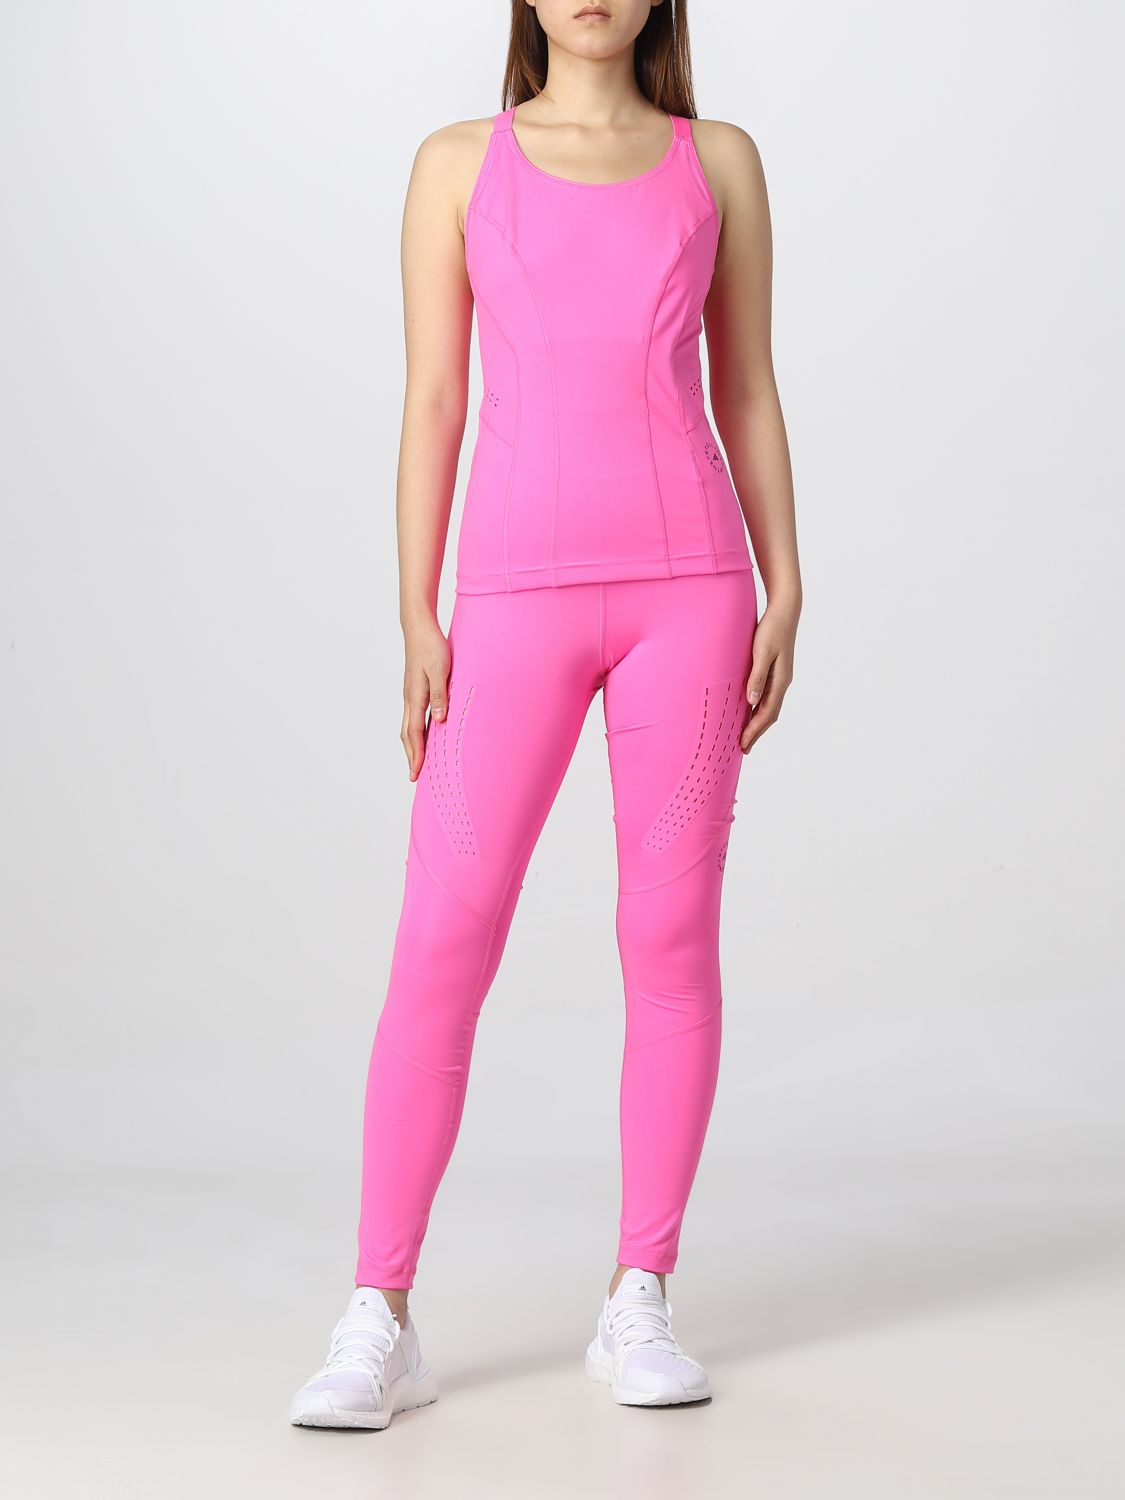 Hose Adidas By Stella Mccartney: Adidas By Stella Mccartney Damen Hose pink 2